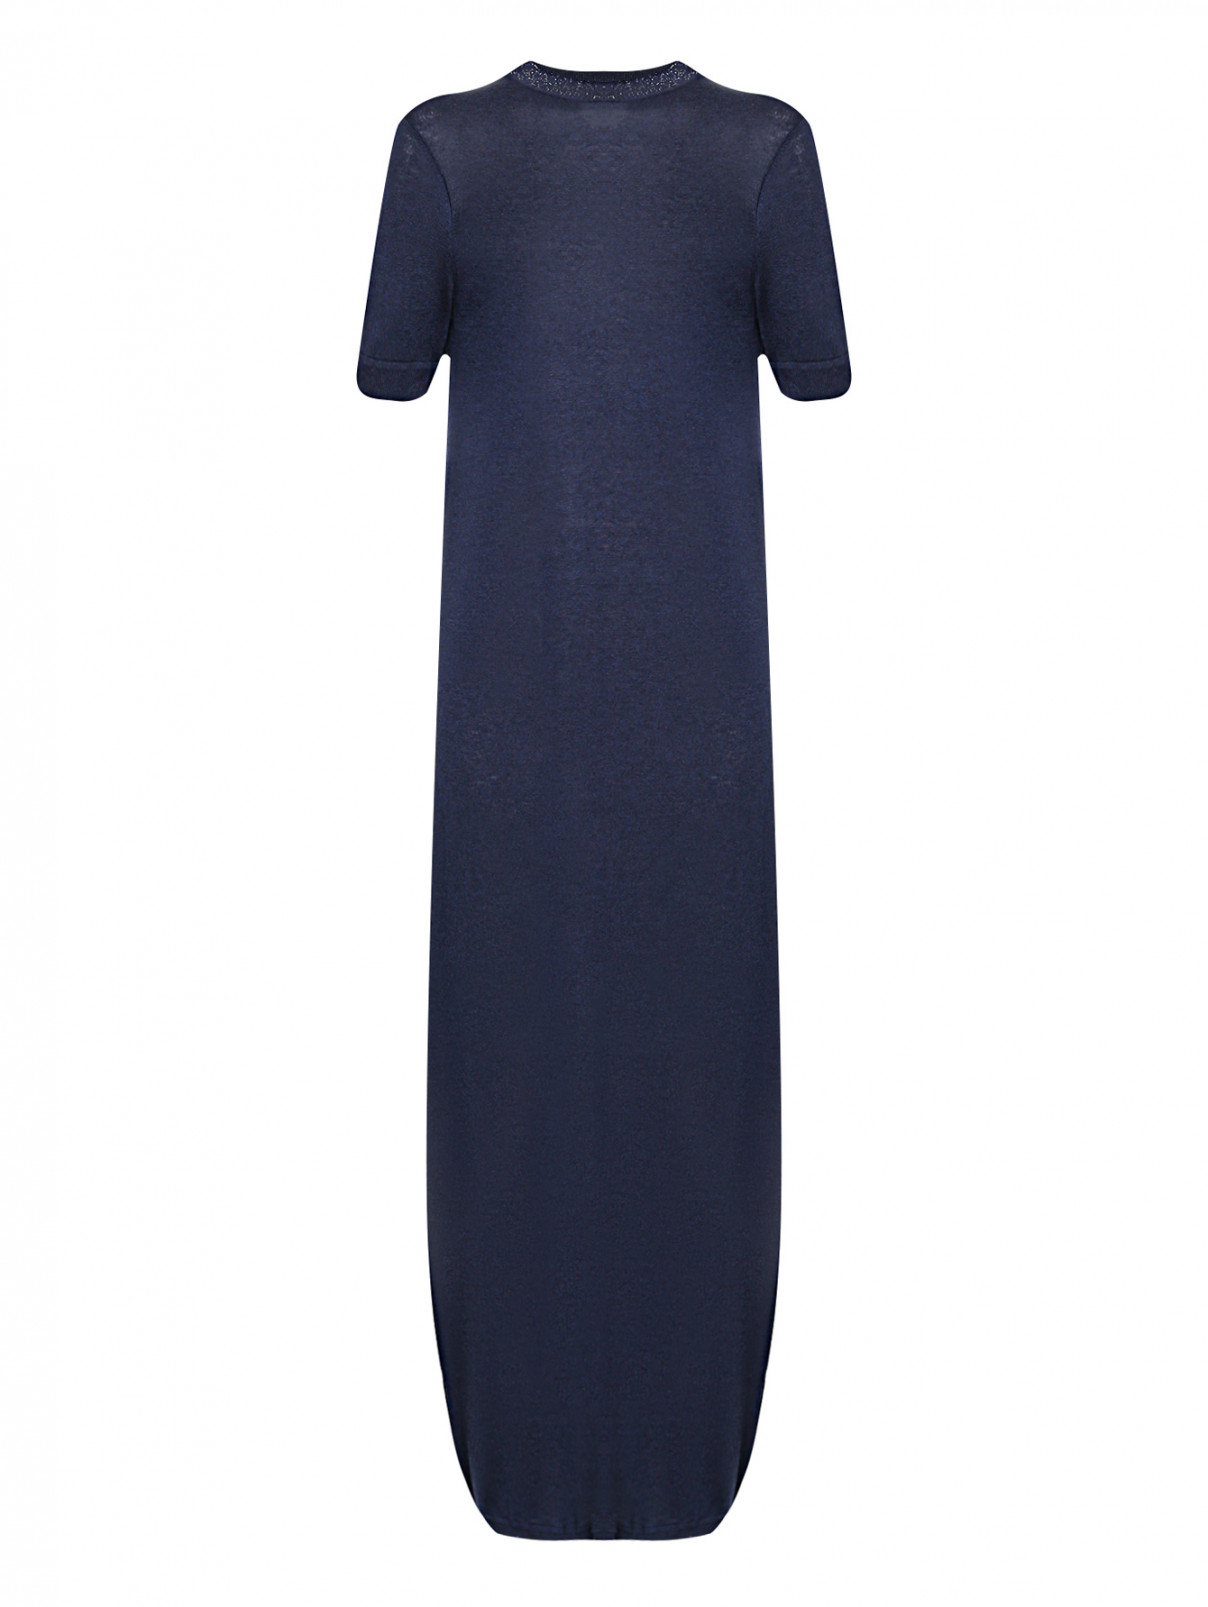 Трикотажное платье с короткими рукавами Joop  –  Общий вид  – Цвет:  Синий